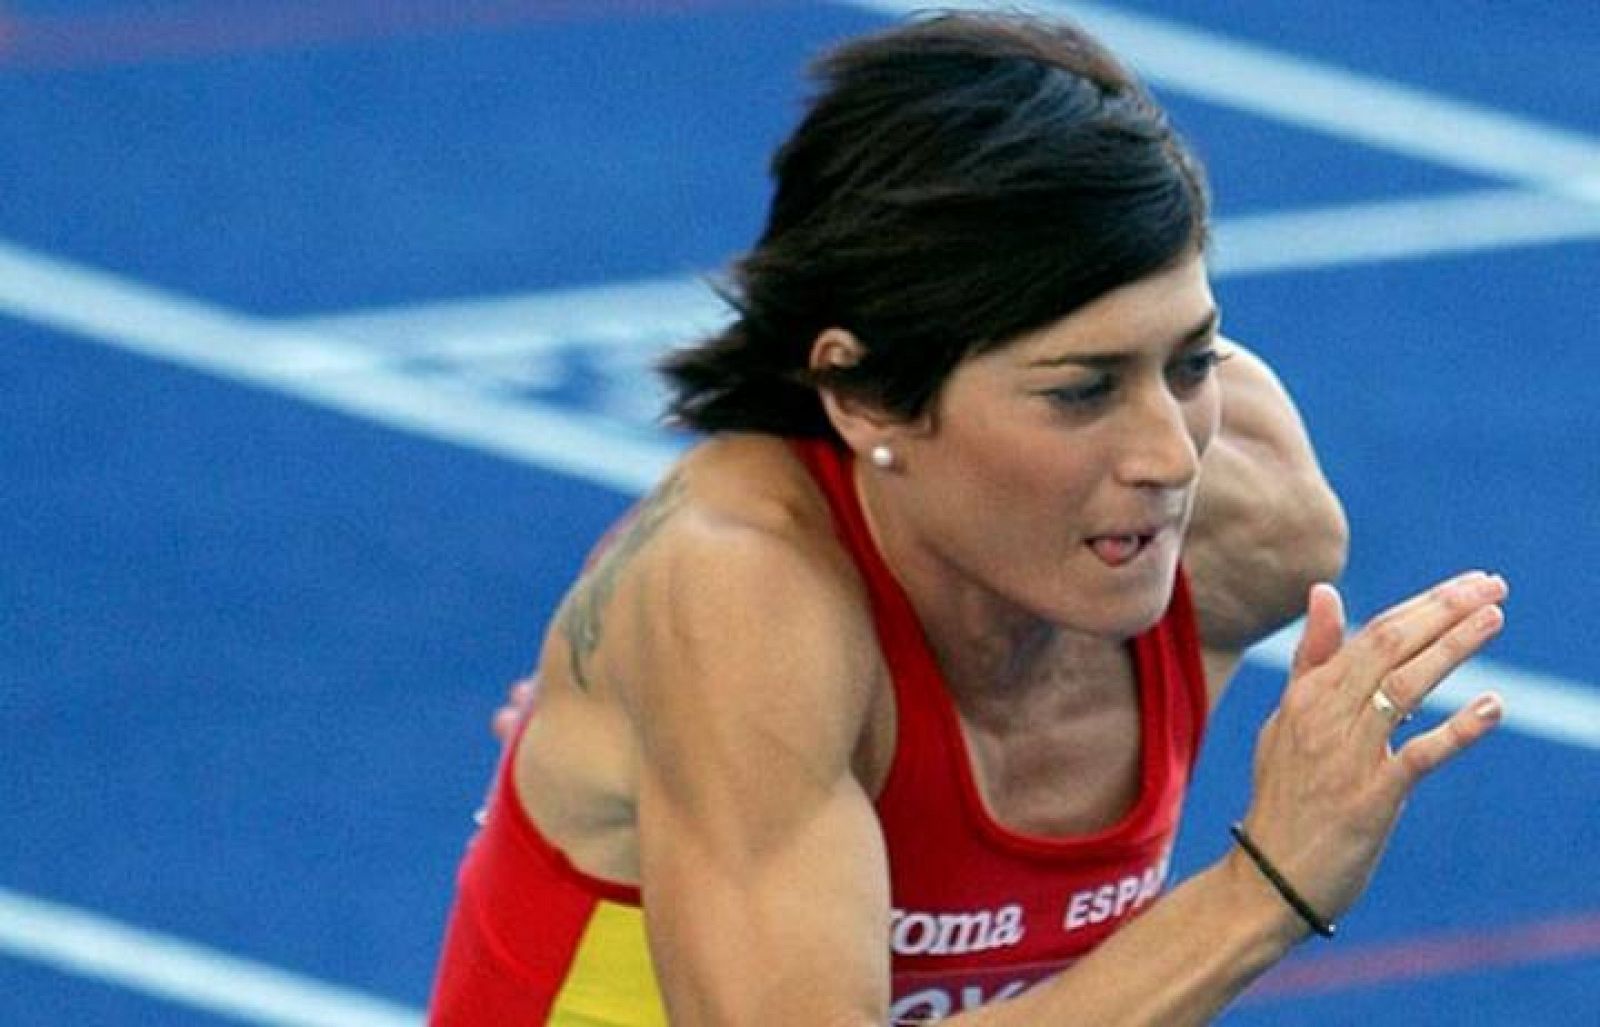 La atleta Mayte Martínez en una imagen de archivo.